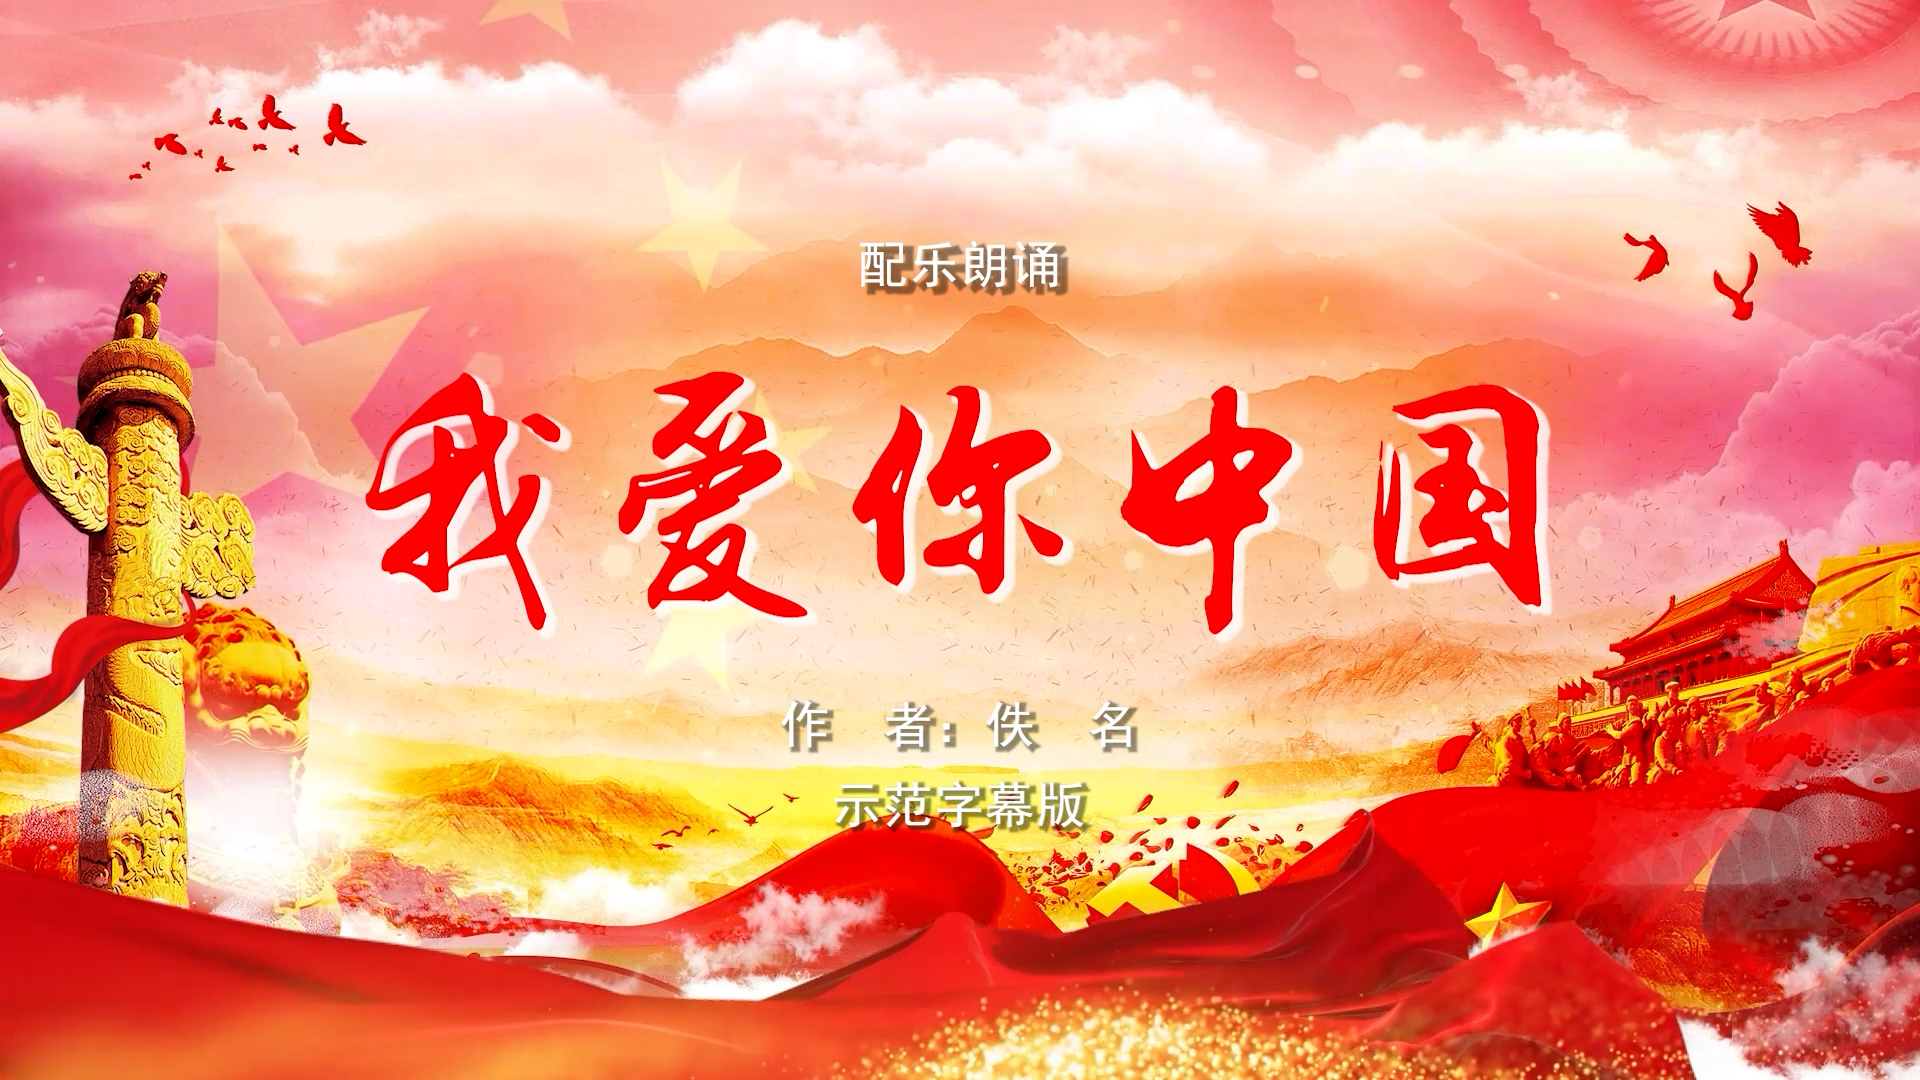 我爱你中国 五四青年节 双人诗歌朗诵配乐伴奏舞